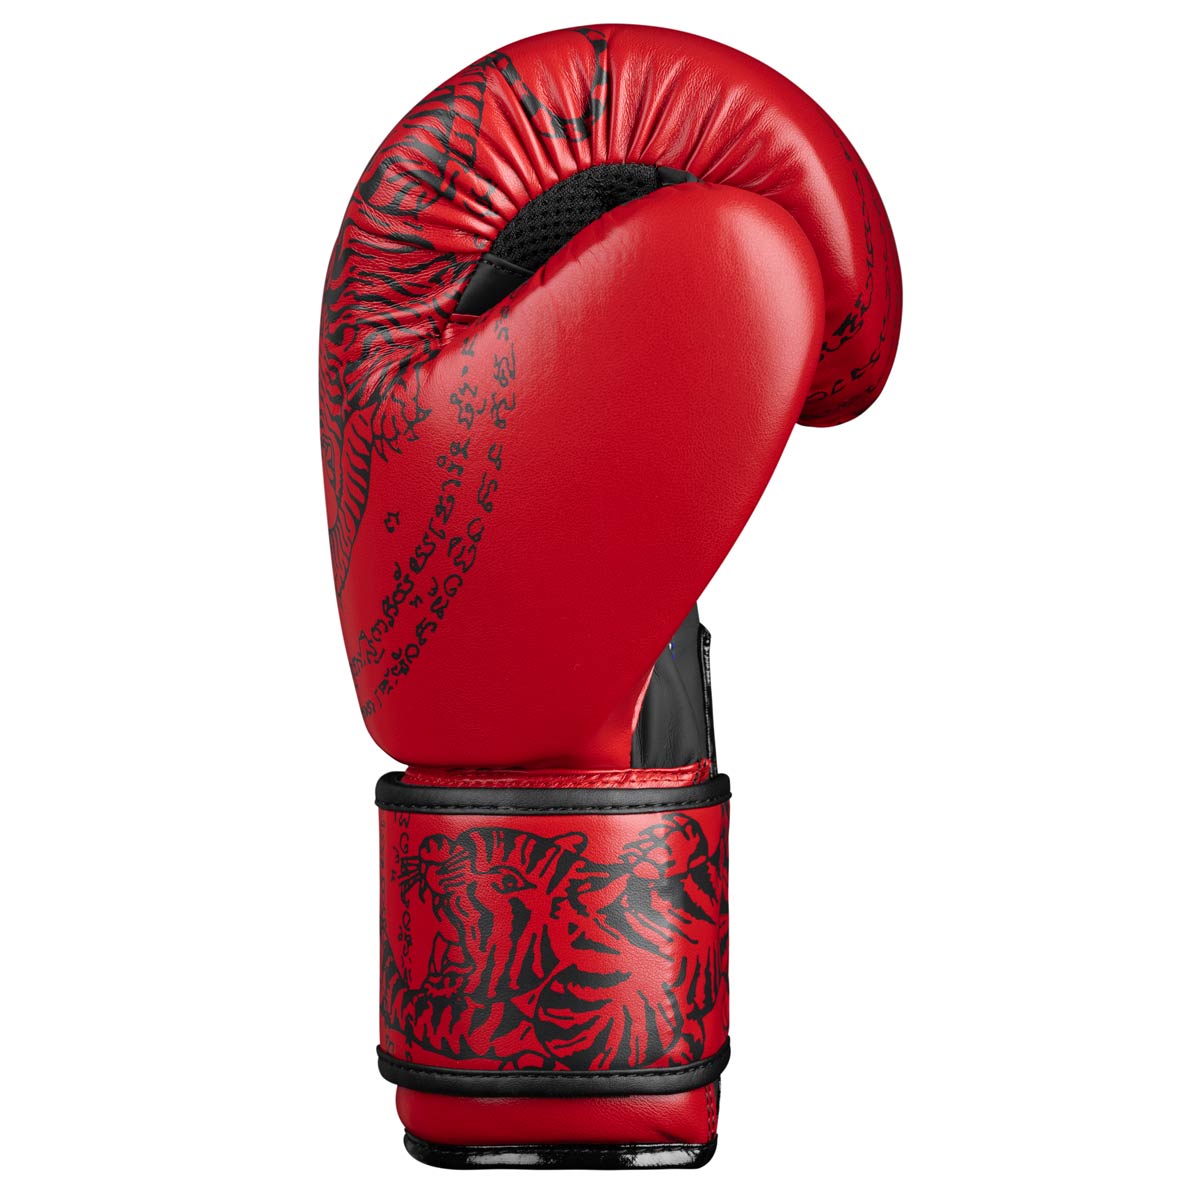 Die Phantom Muay Thai Boxhandschuhe verfügen über ein perfekte Passform um deine Hände in Training und Wettkampf perfekt zu schützen. 